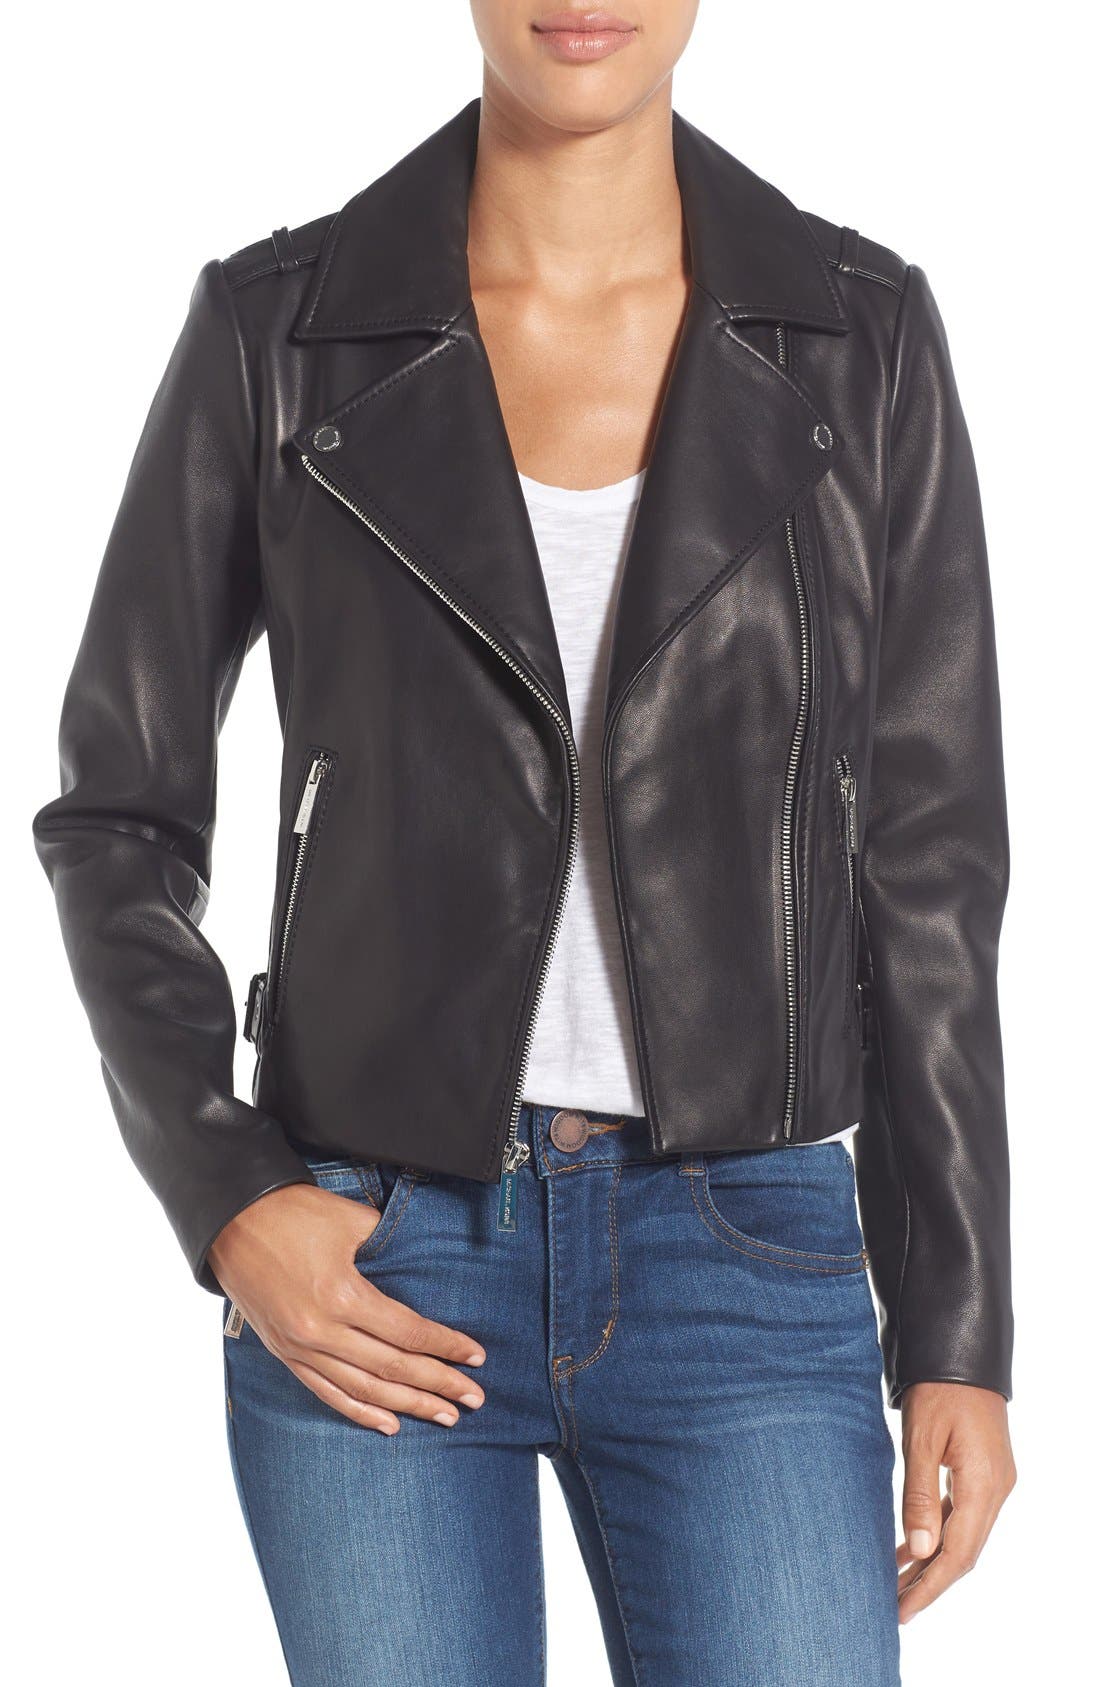 michael kors black leather jacket